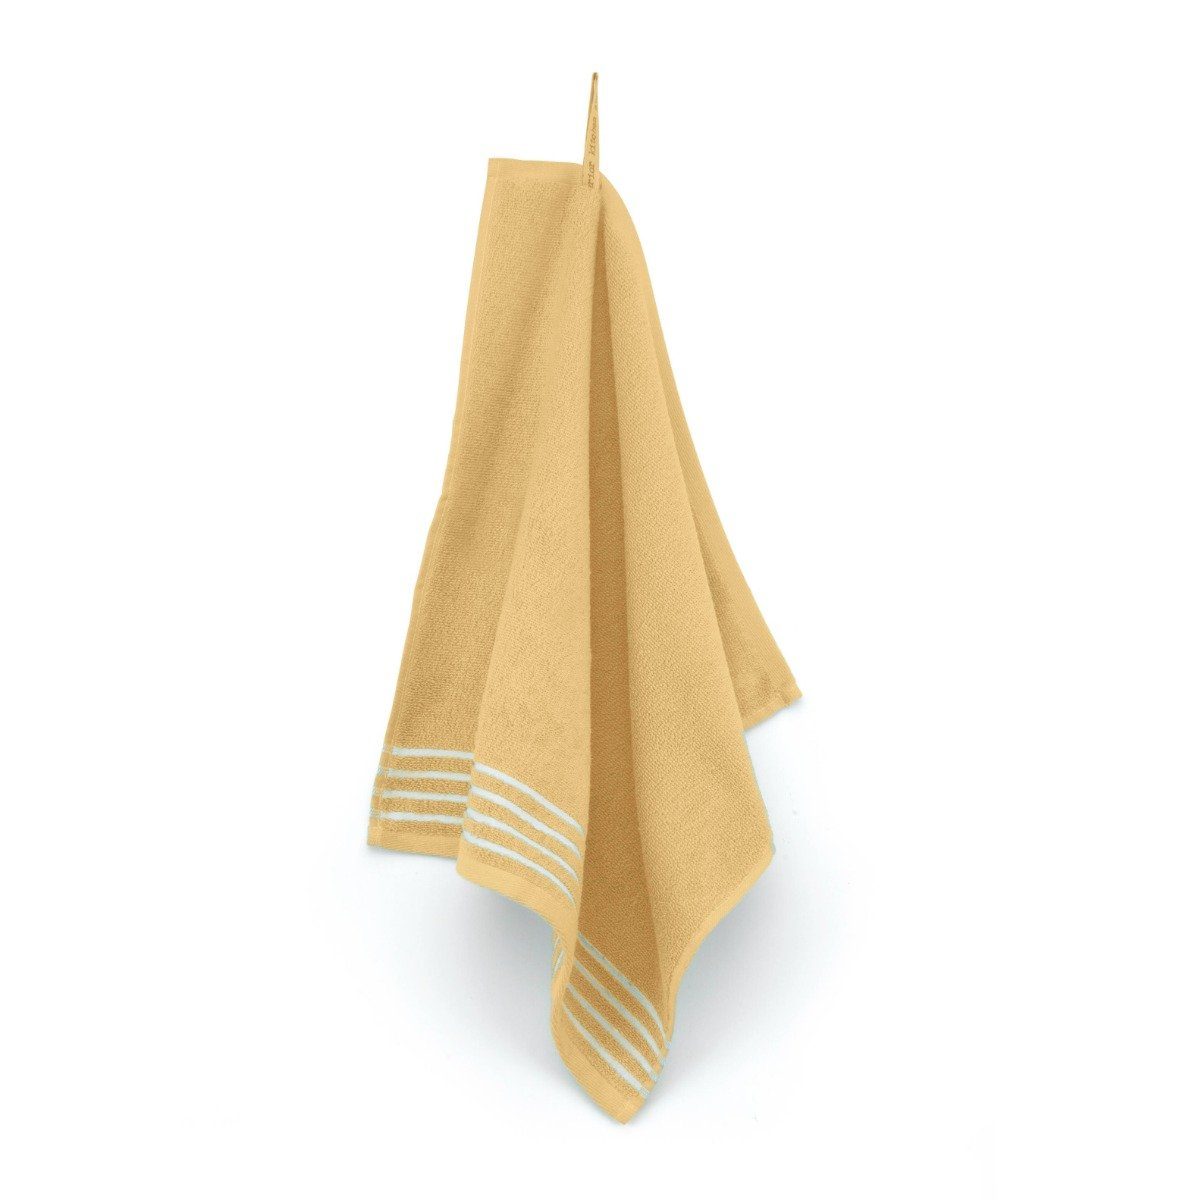 Walra Geschirrtuch Küchentuch Superior Kitchencloth Gelb - 50x50 cm, aus 100% Baumwolle, Premium-Qualität - Vielfältig einsetzbares